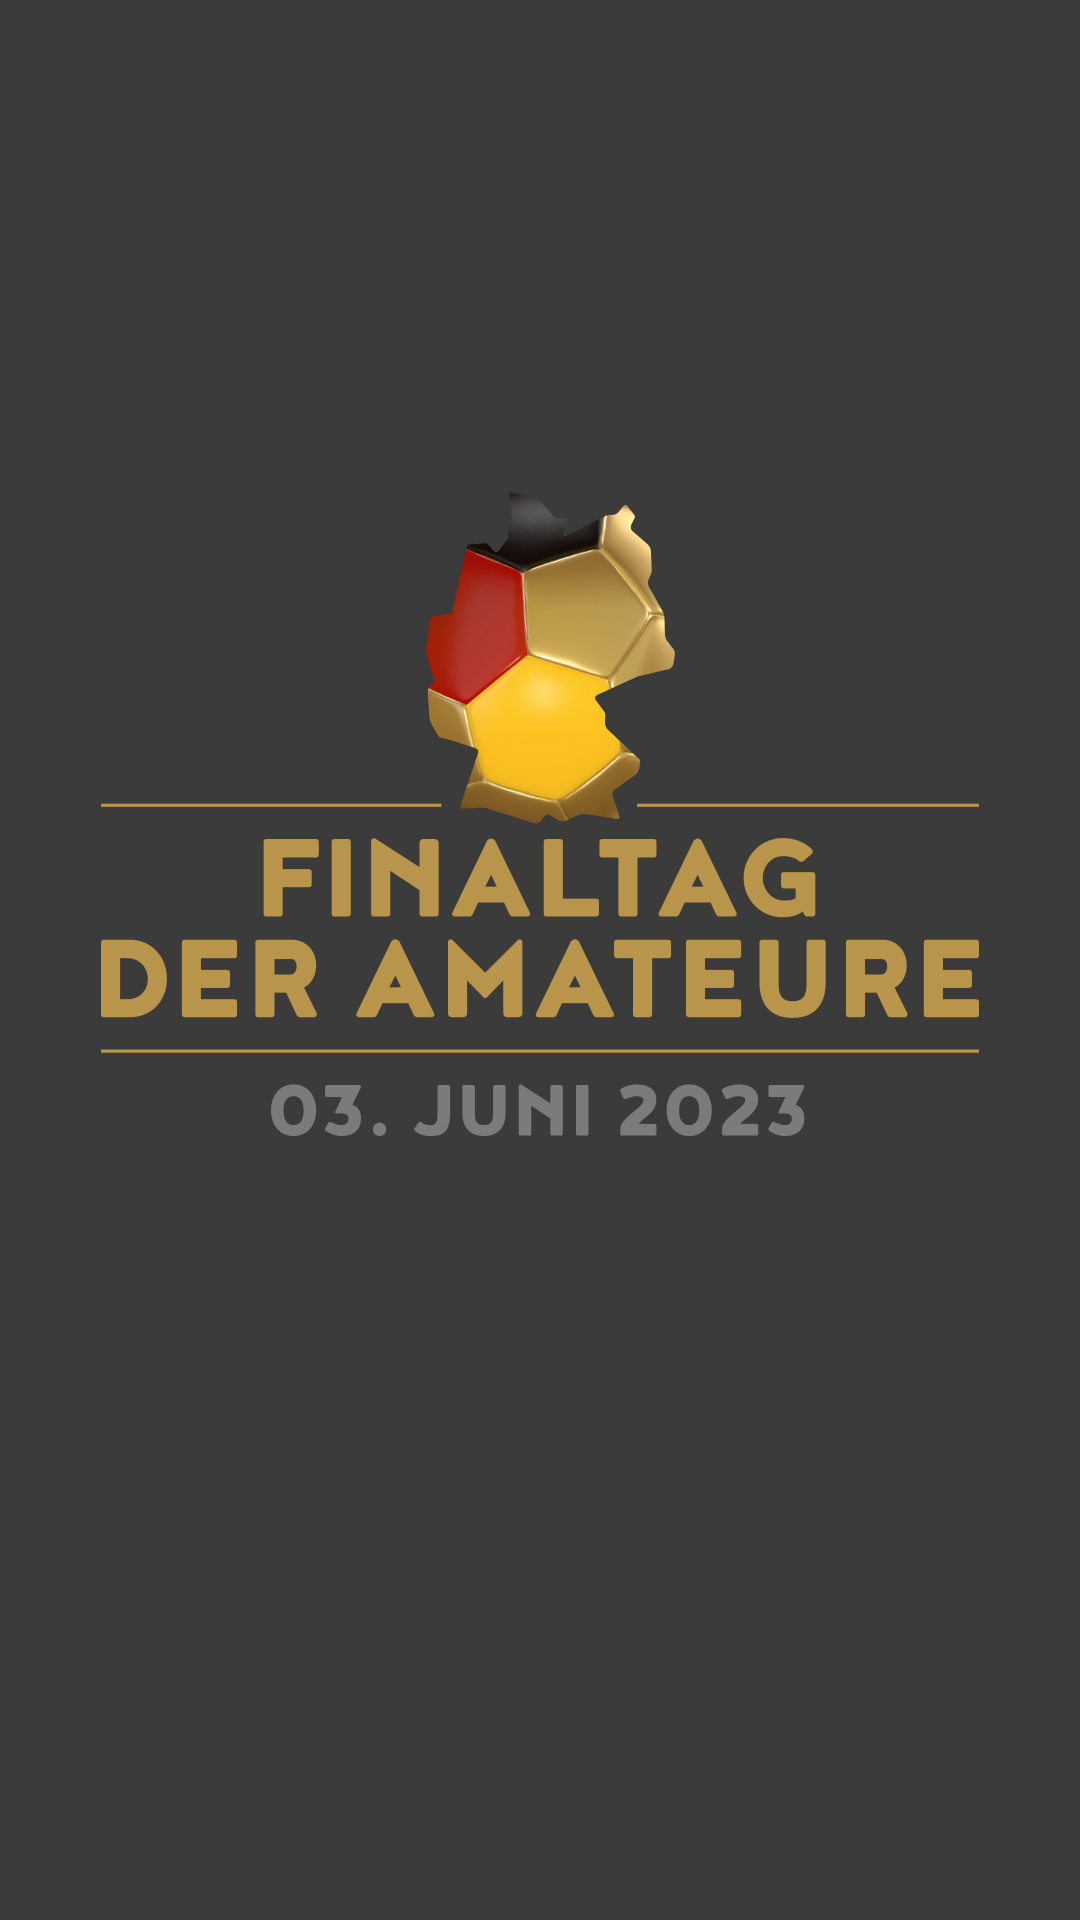 Finaltag der Amateure ǀ Berliner Fußball-Verband e